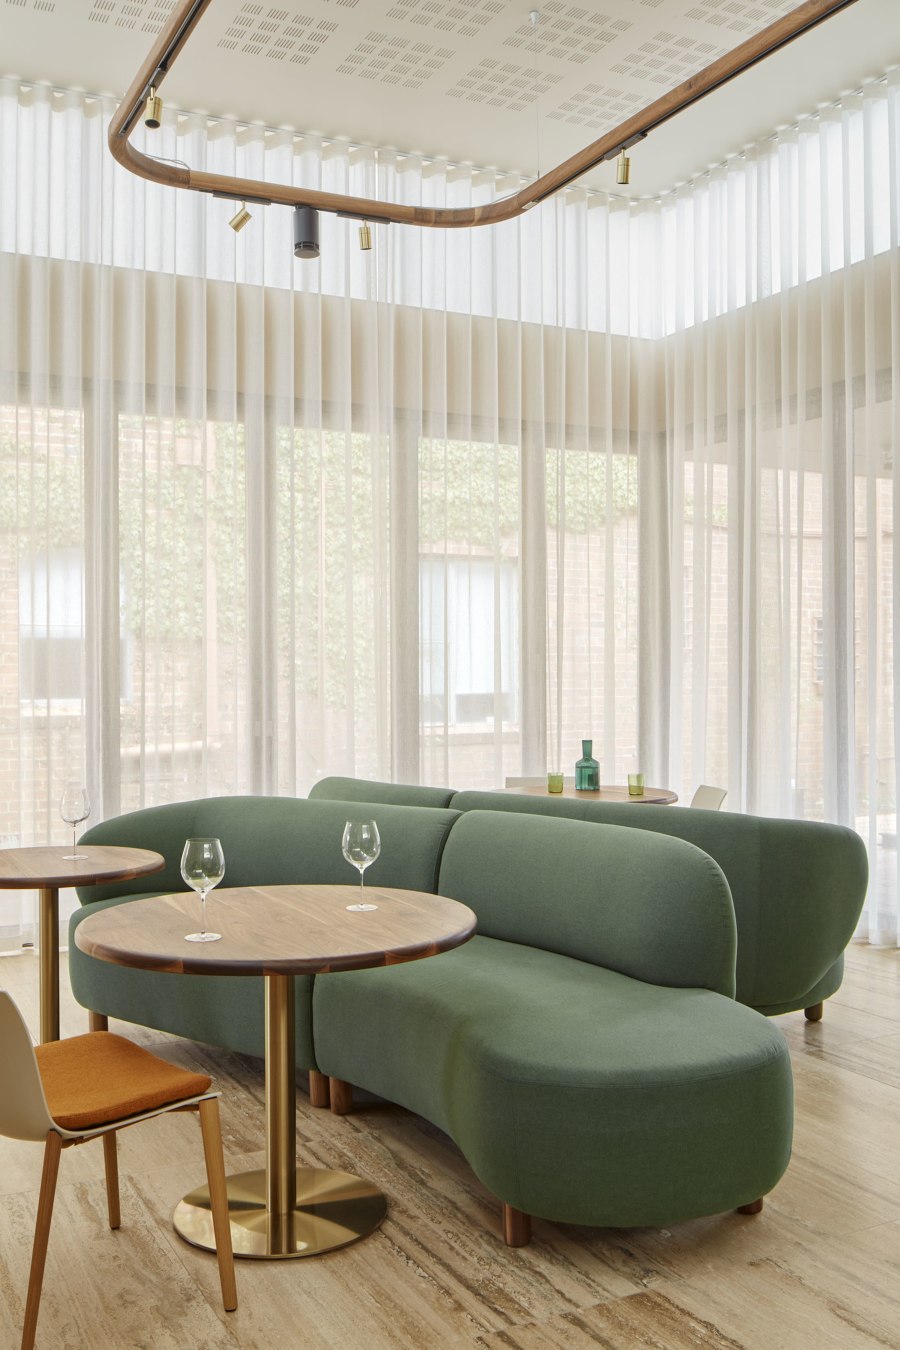 Hotel Vera Ballarat von Pitch Architecture + Design | Hotels